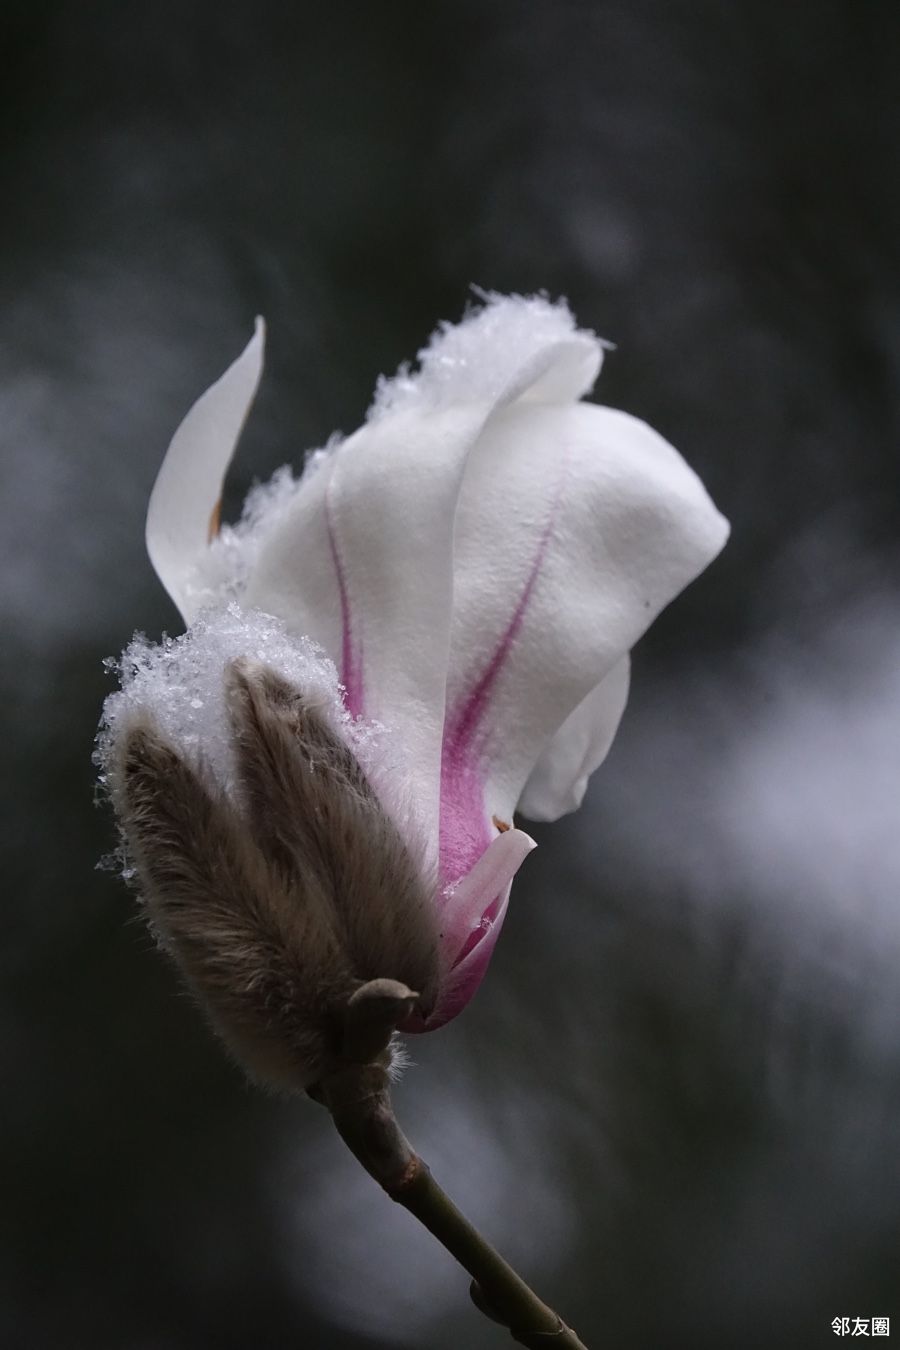 下午的一场雪,给悄然开放的花朵带来薄薄的雪花,花朵更加漂亮在雪中